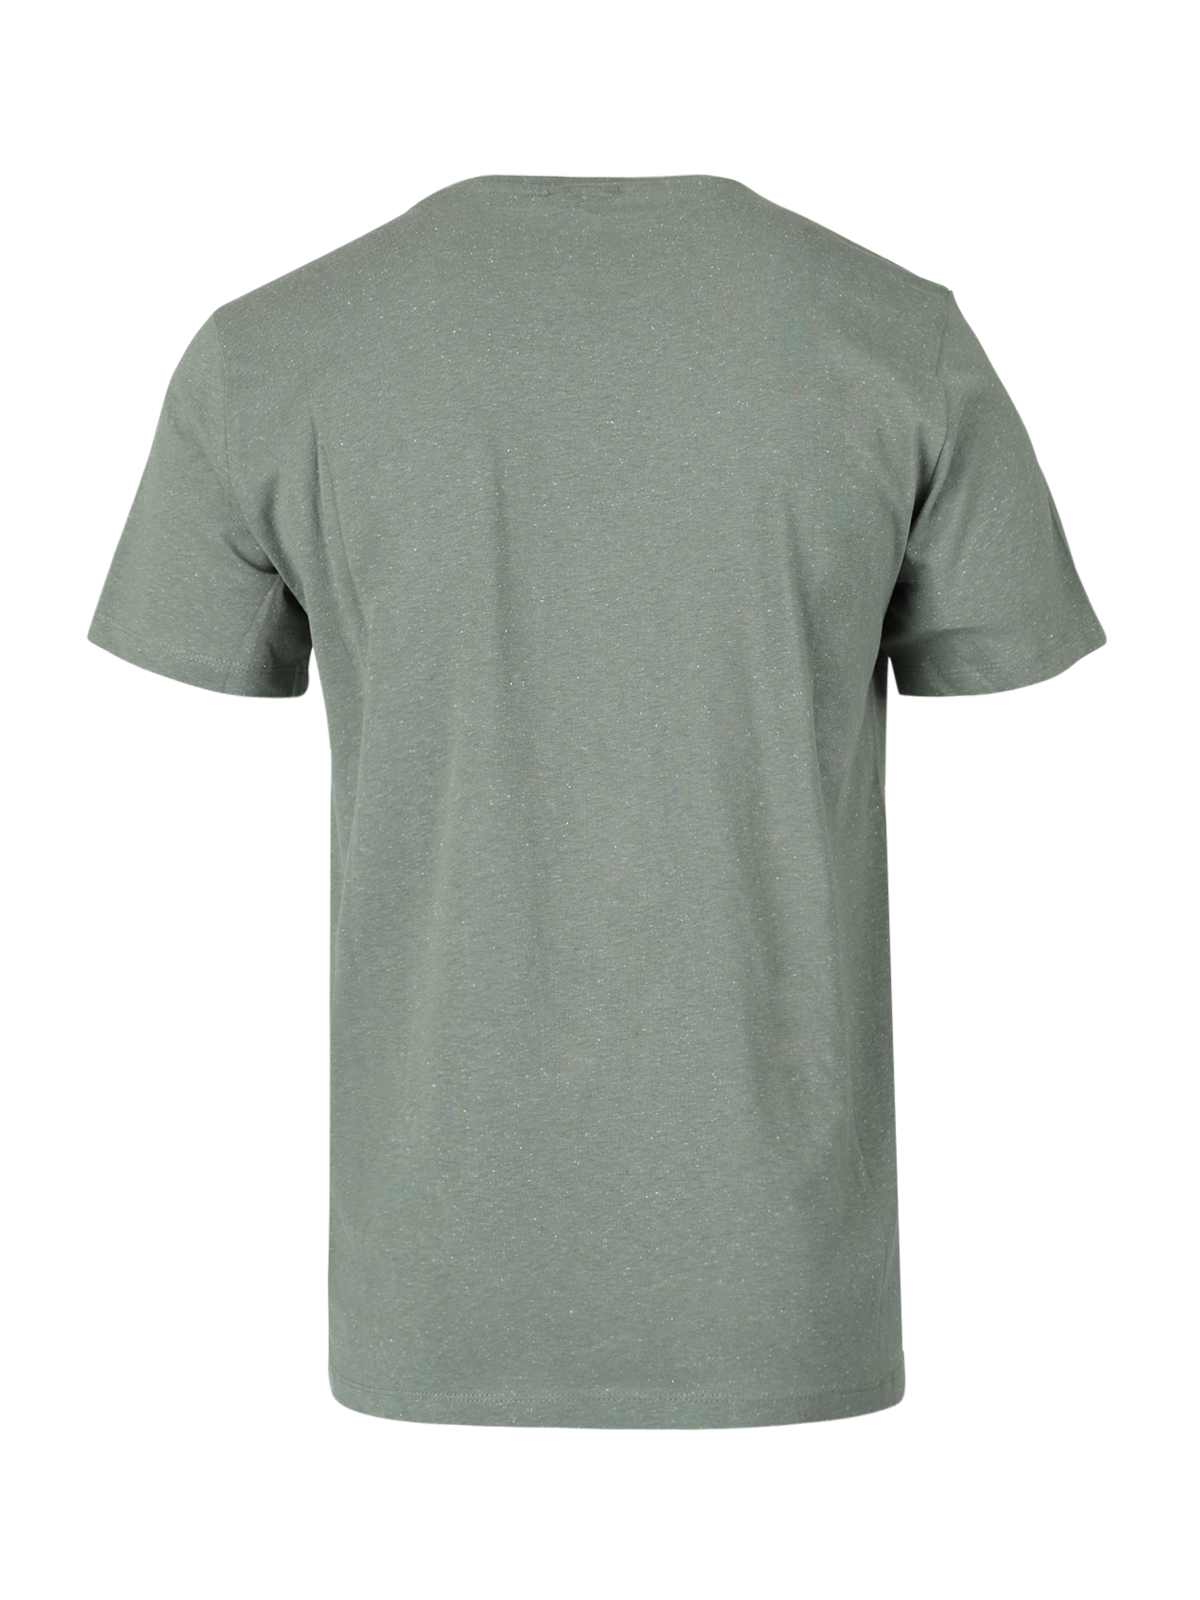 Axle-Neppy Herren T-Shirt | Grün